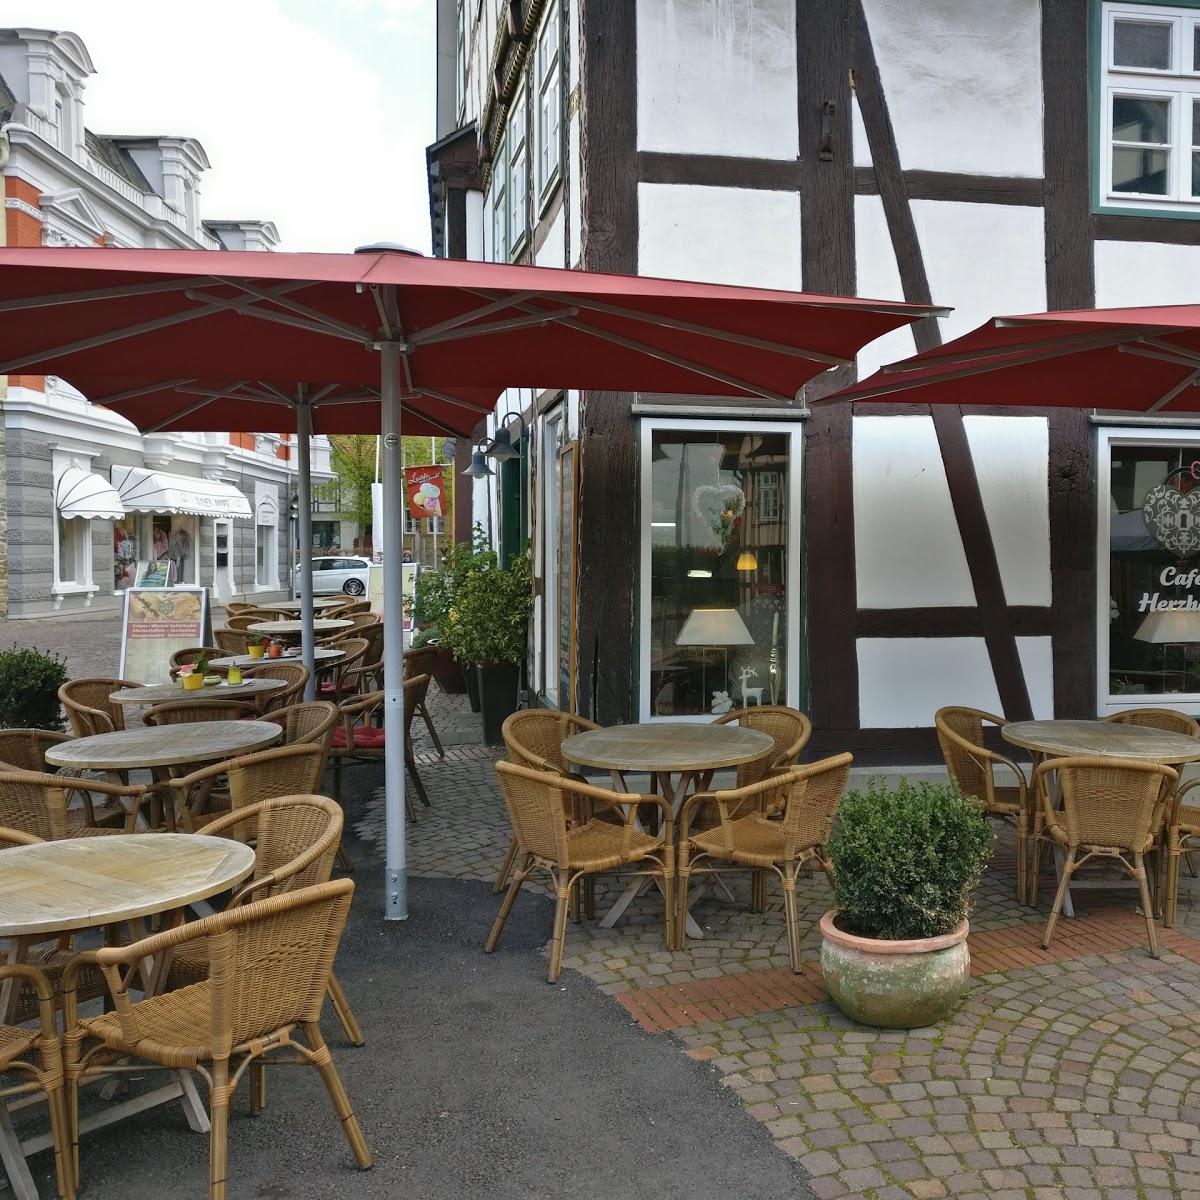 Restaurant "Cafe Herzhaft" in Bad Salzuflen